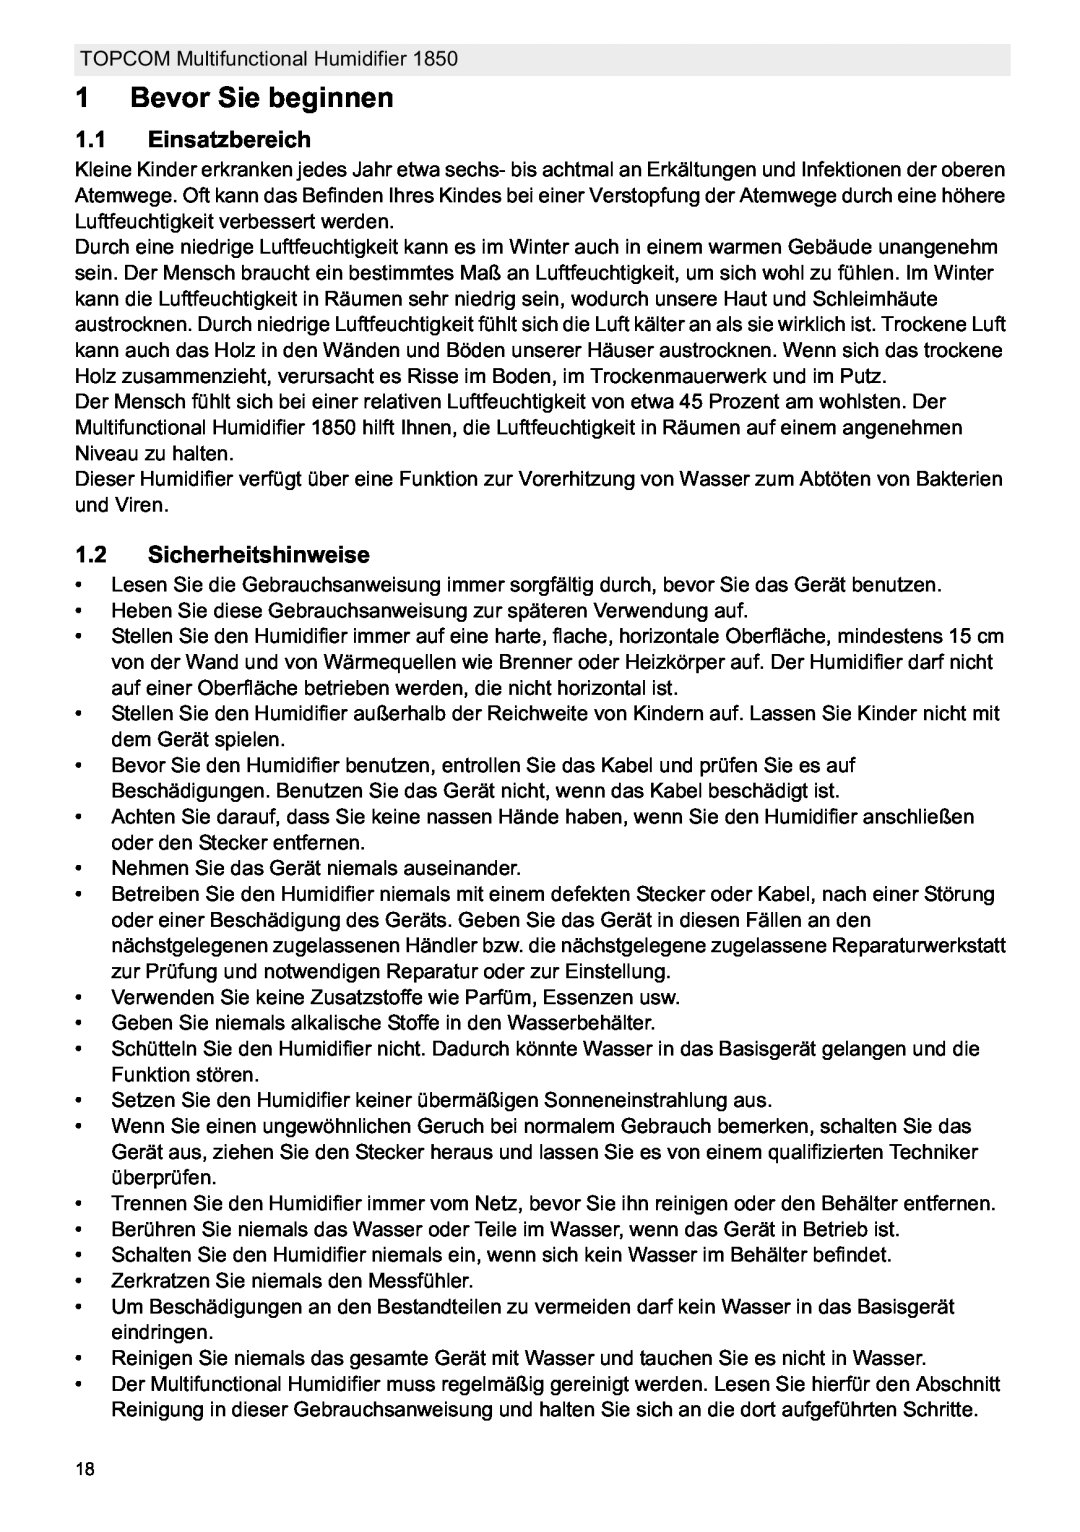 Topcom 1850 manual do utilizador Bevor Sie beginnen, Einsatzbereich, Sicherheitshinweise 